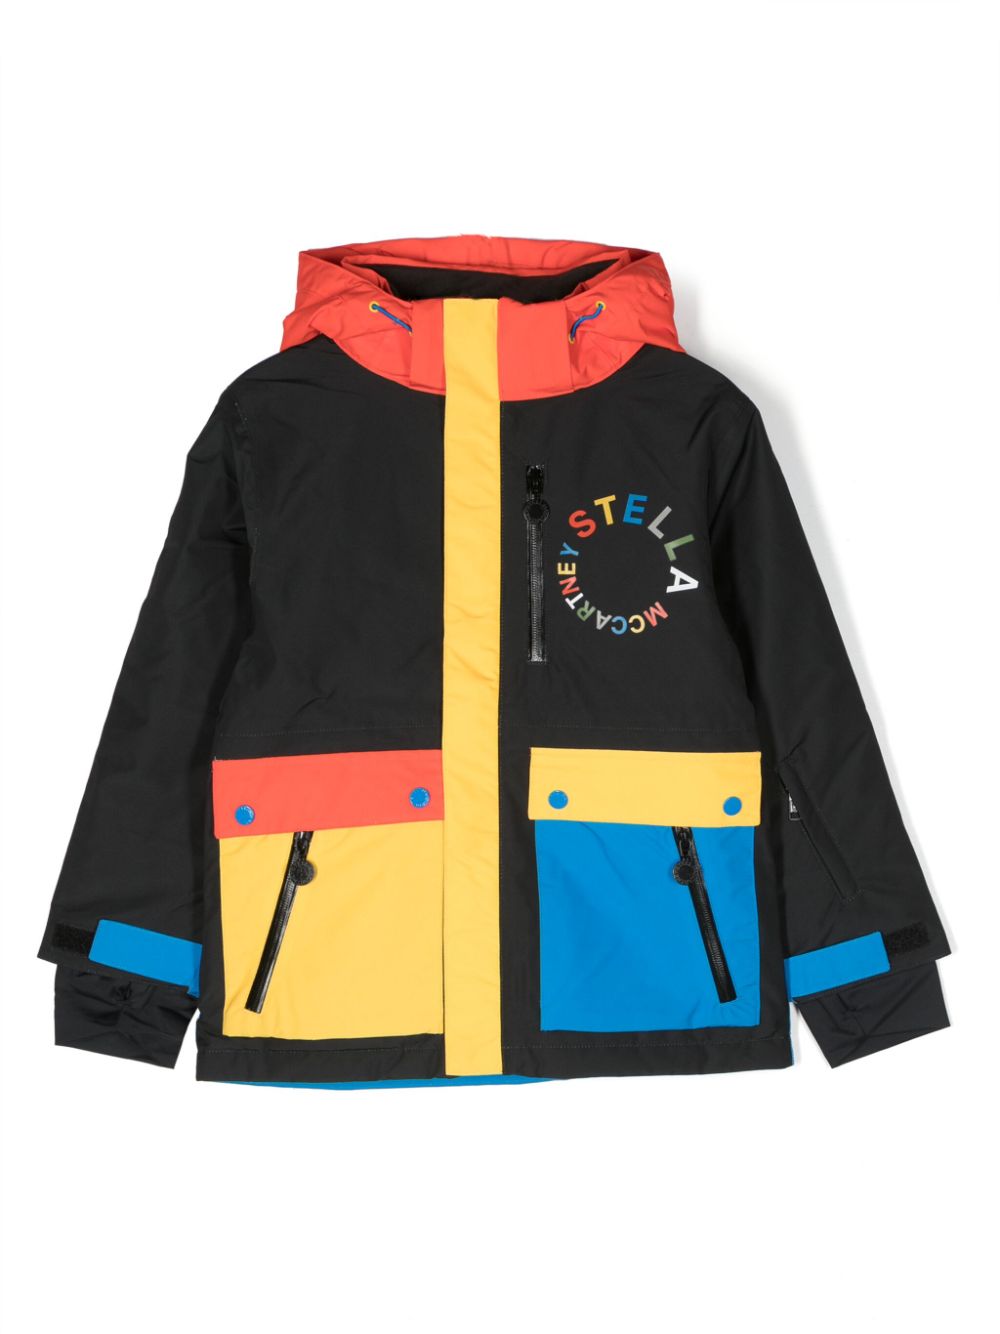 Veste enfant noire et multicolore avec logo